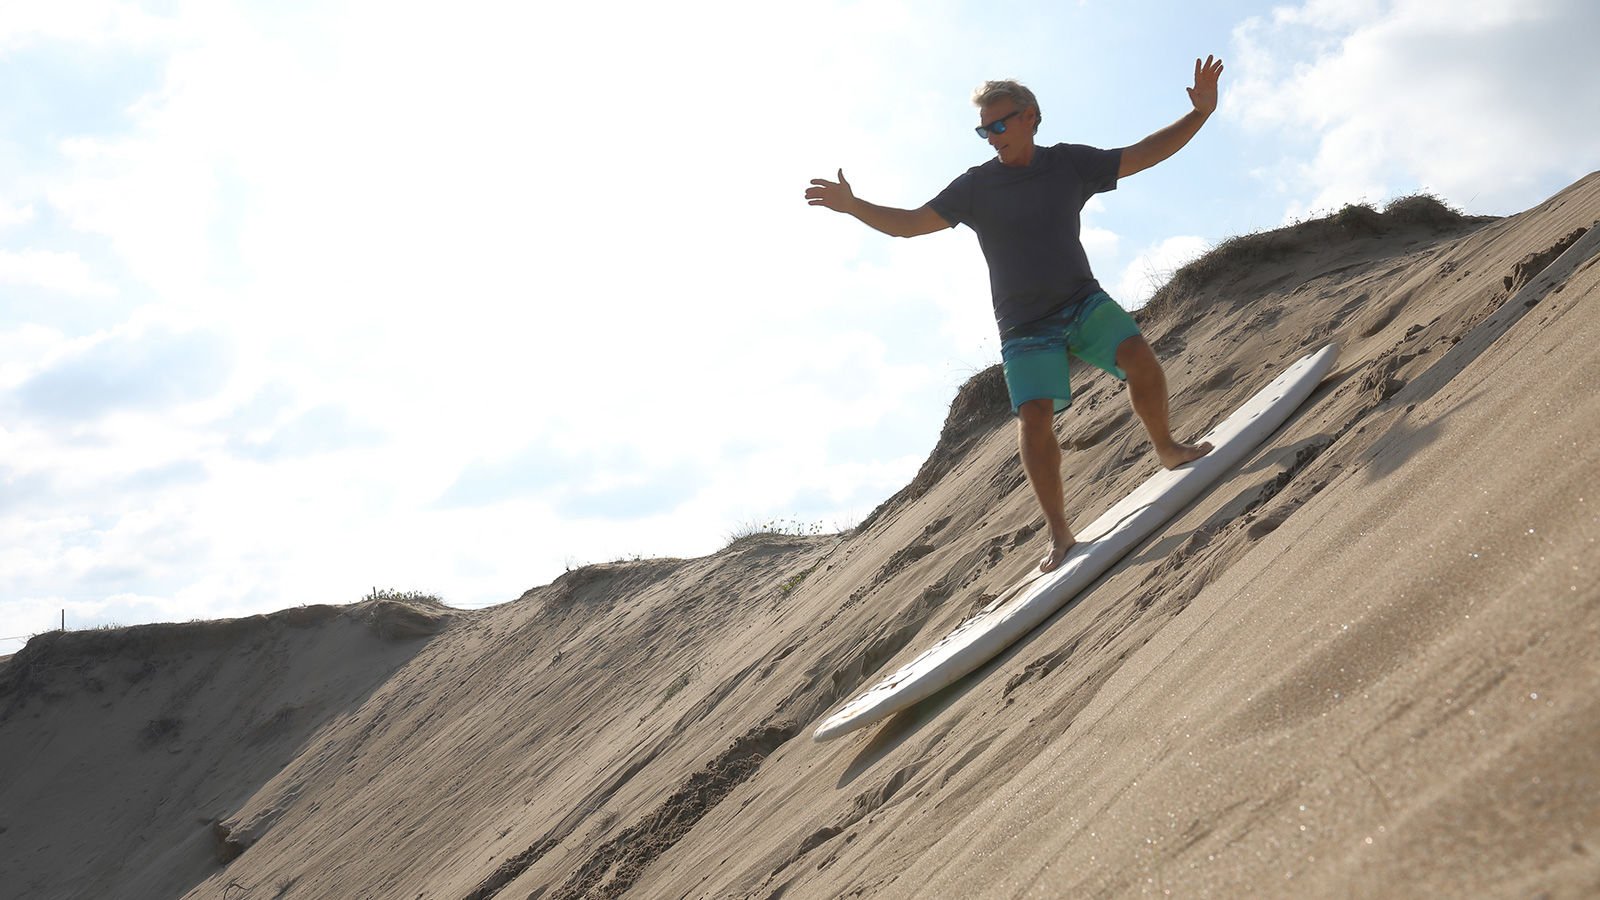 Sand Surfing